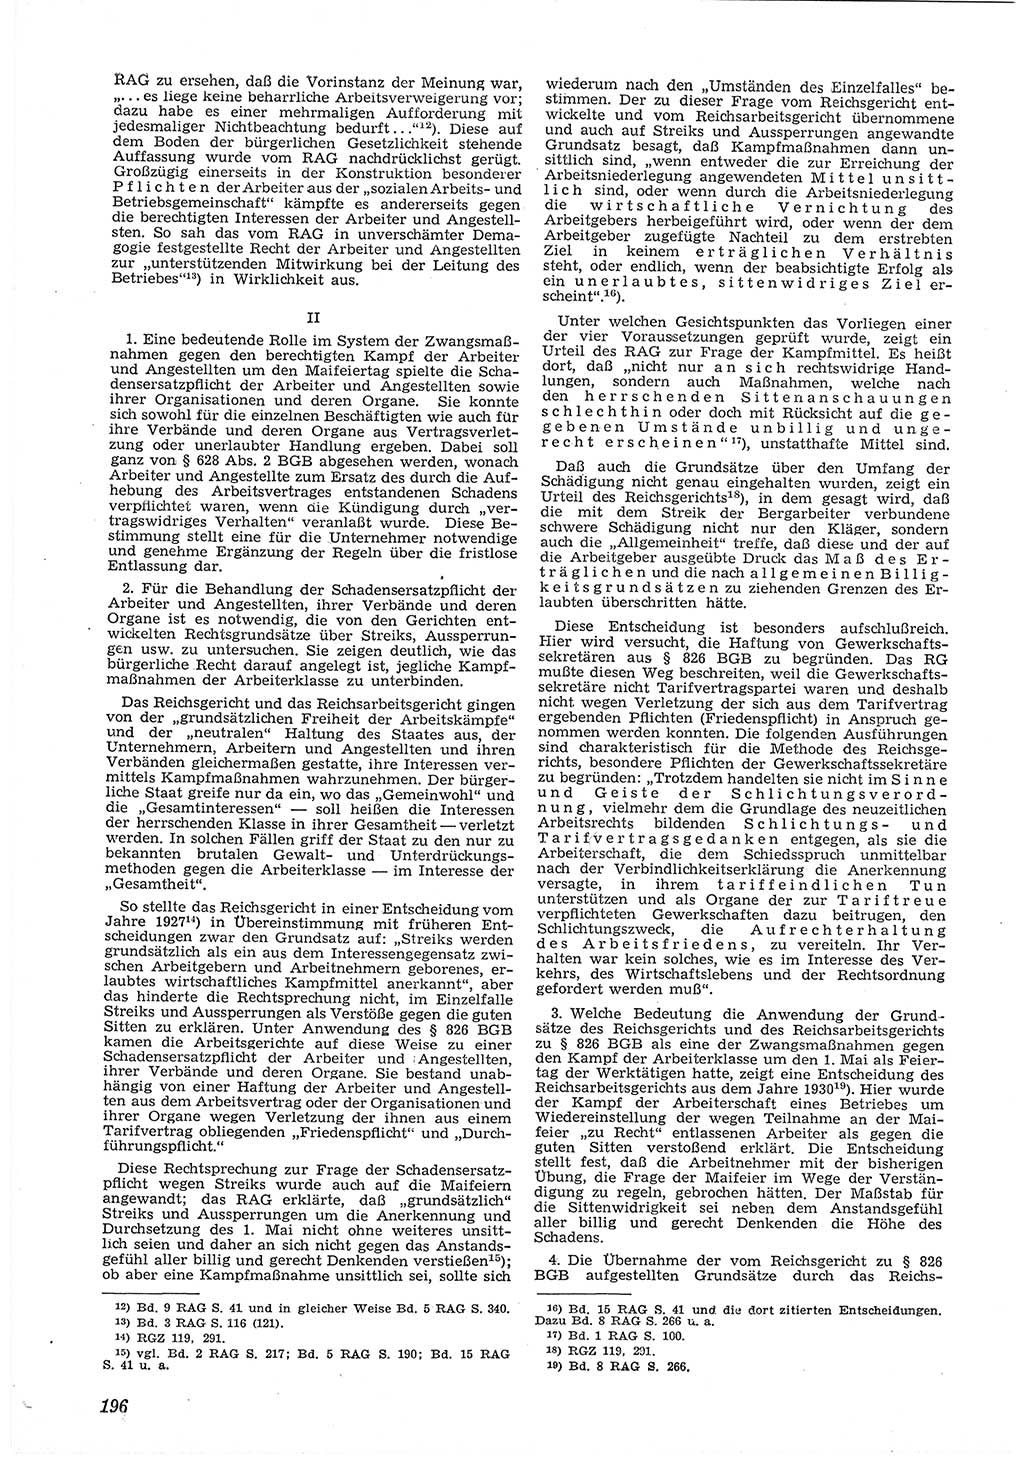 Neue Justiz (NJ), Zeitschrift für Recht und Rechtswissenschaft [Deutsche Demokratische Republik (DDR)], 6. Jahrgang 1952, Seite 196 (NJ DDR 1952, S. 196)